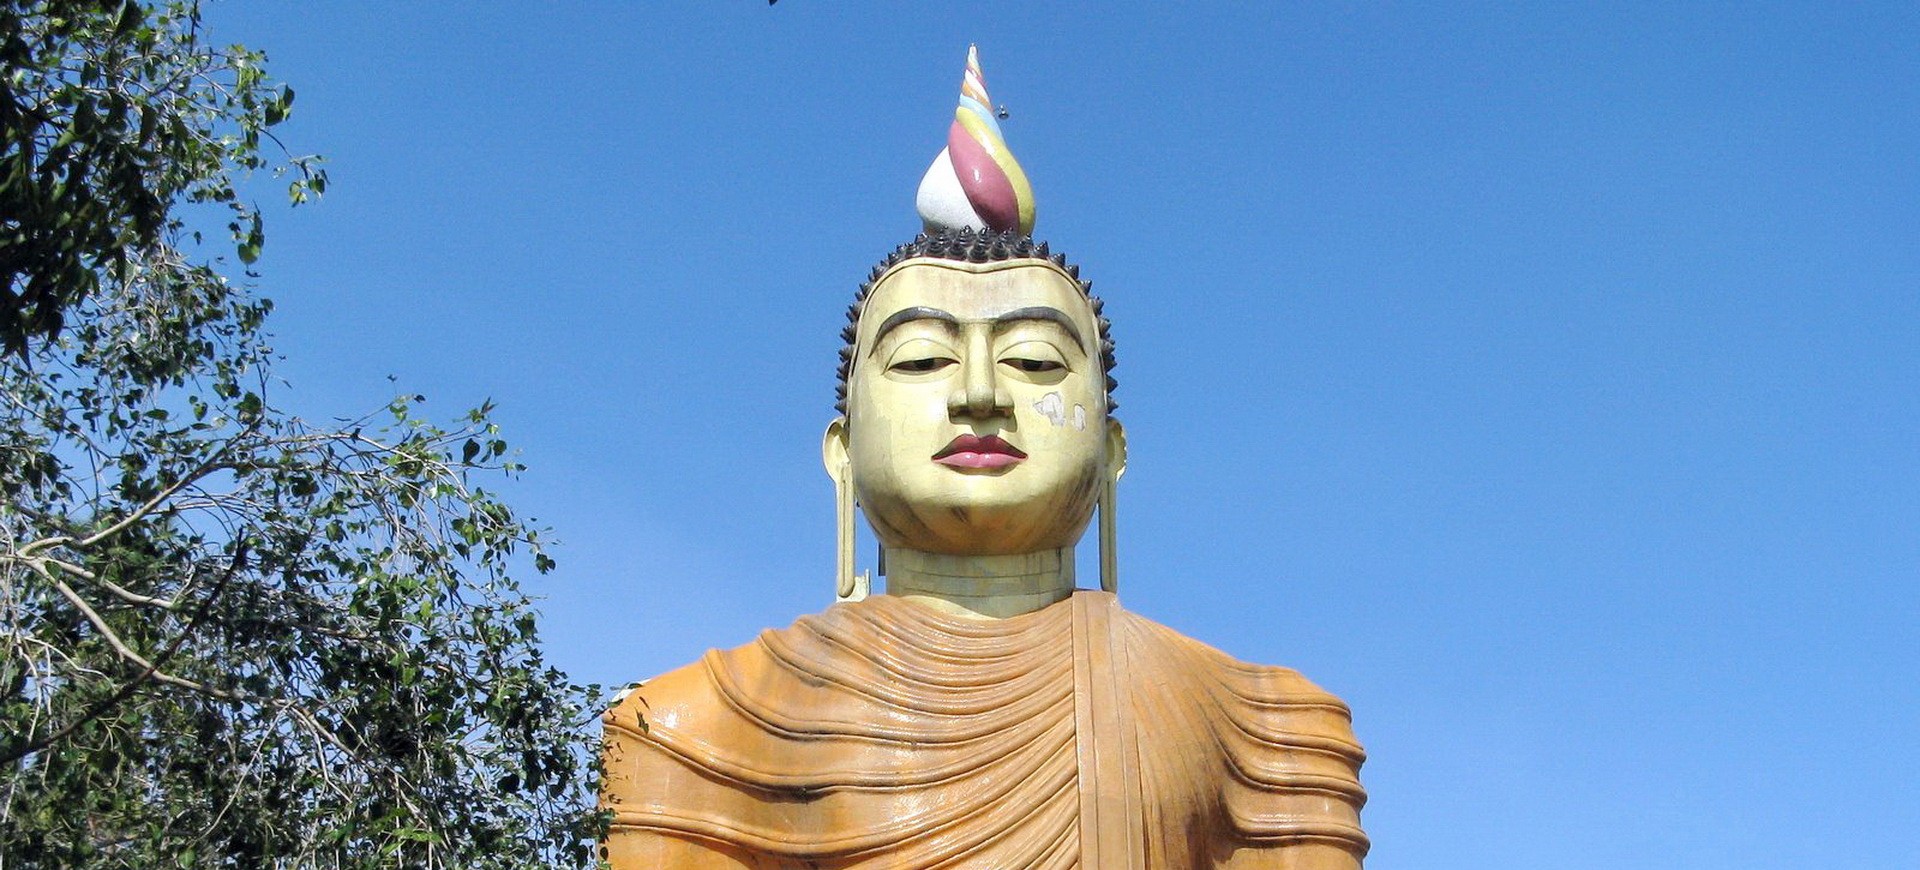 Sri Lanka Wewurukannala Statue de Bouddha Géant